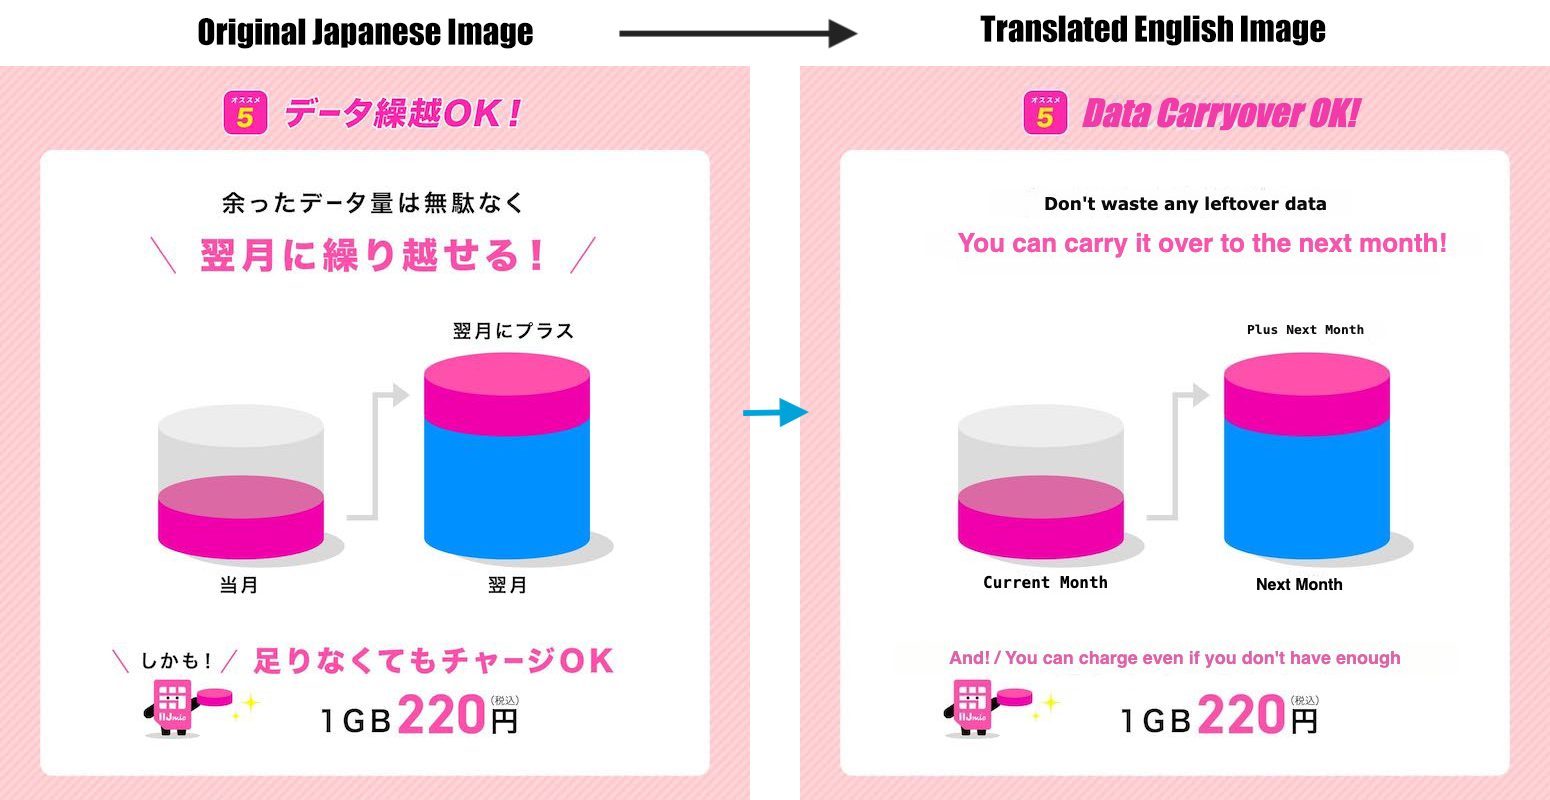 Japanese to English image translation example